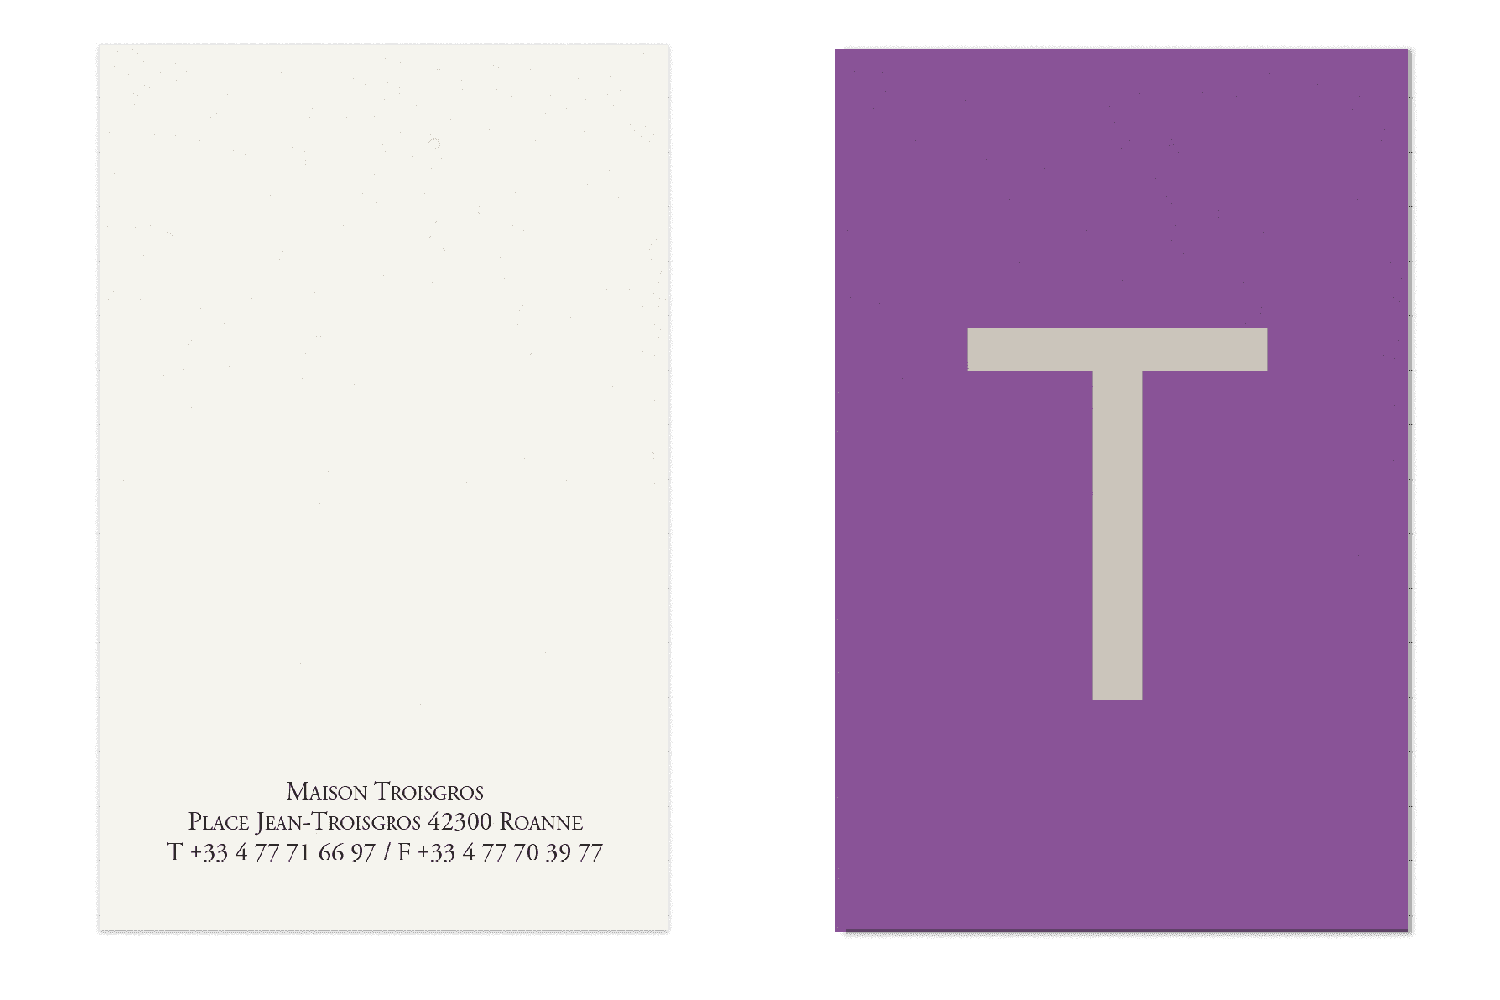 Les cartes de visite de l'identité visuelle de la maison troisgros, graphisme IchetKar